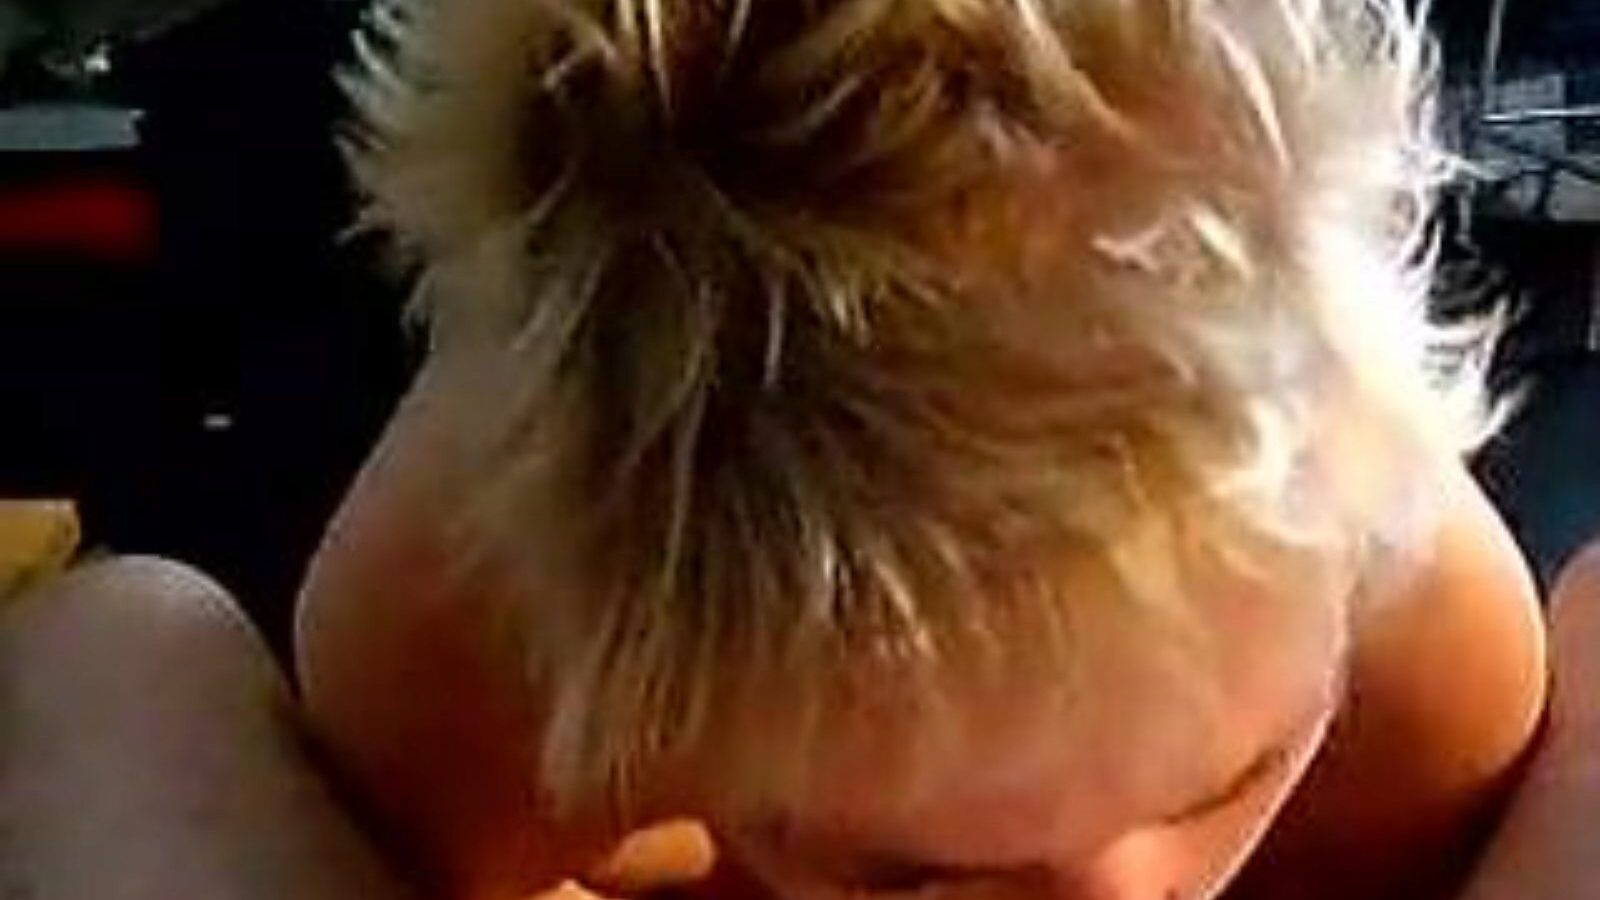 leuke dame: video porno fatto in casa e vecchia ragazza a6 - xhamster guarda il film di leuke dame tube fuckfest gratuitamente su xhamster, con la più calda collezione di video porno olandesi fatti in casa, vecchie ragazze e succhiare clip porno